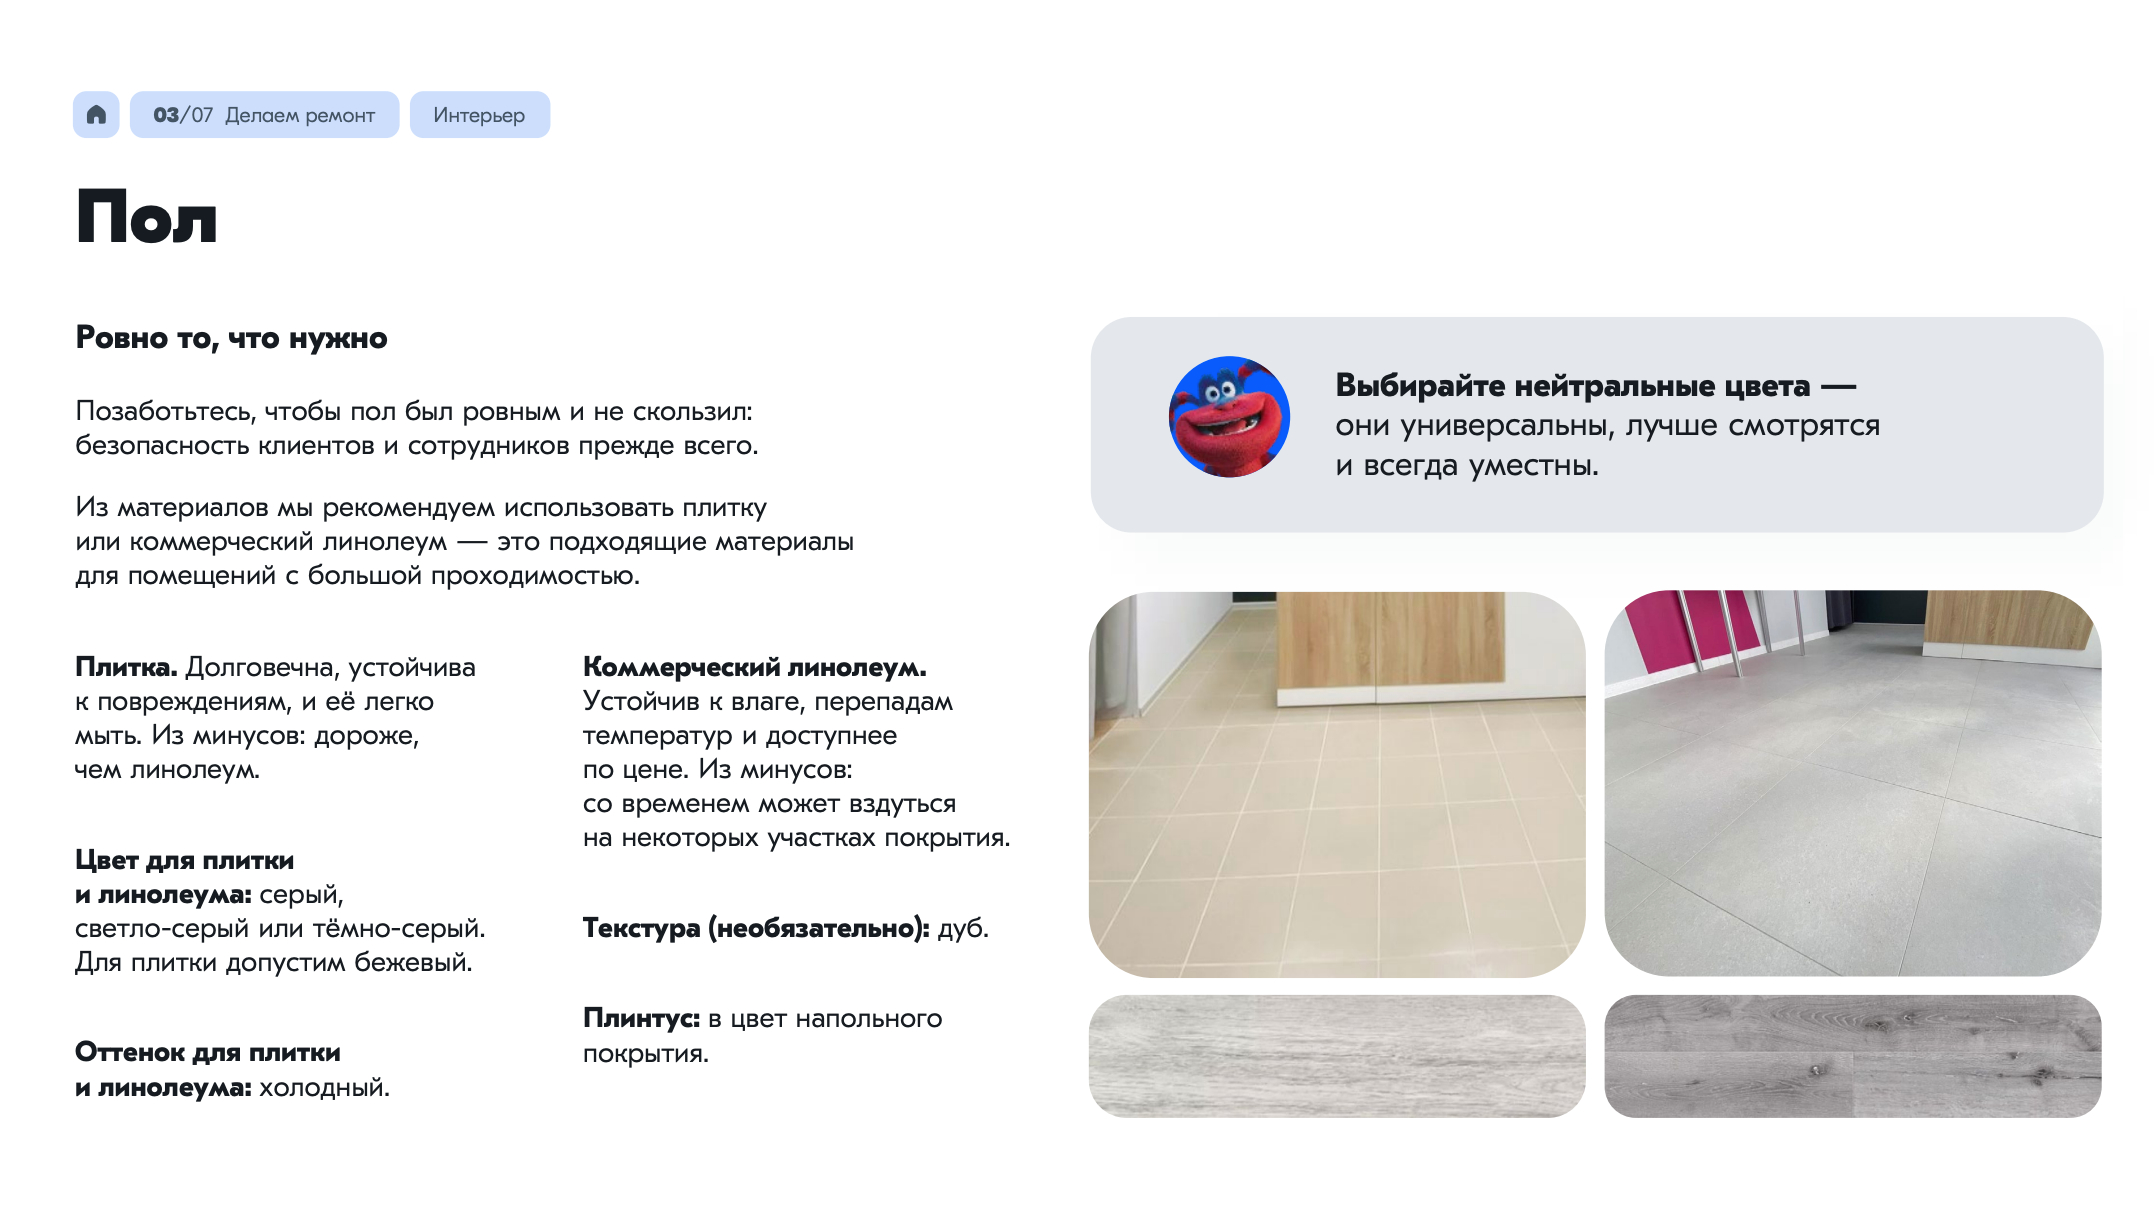 В брендбуке есть описание деталей ремонта. Источник: cdn1.ozone.ru